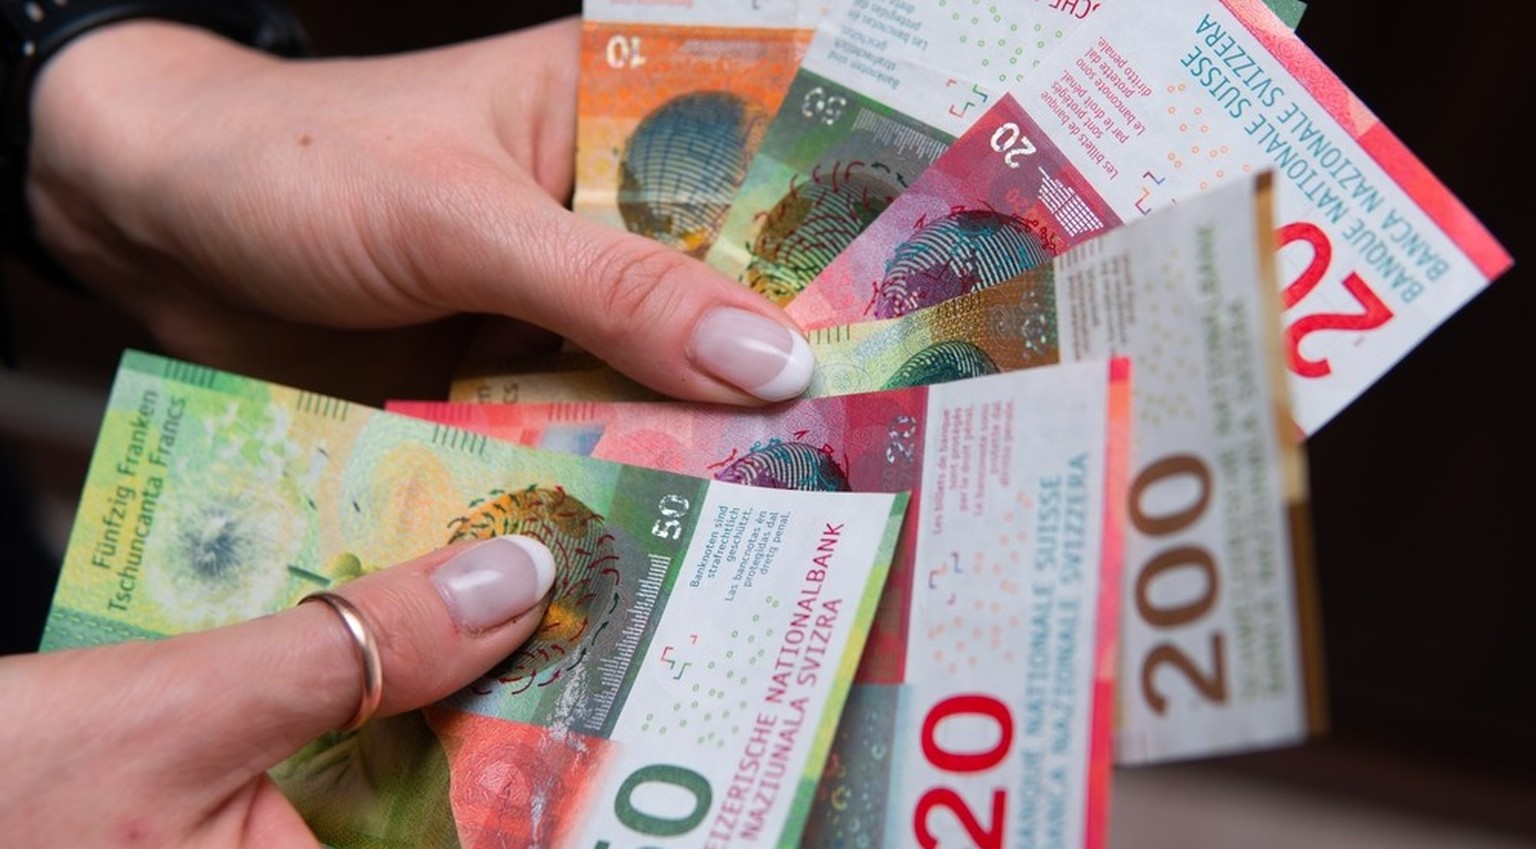 schweizer medianlohn liegt bei 6788 franken – geschlechterunterschiede nehmen weiter ab